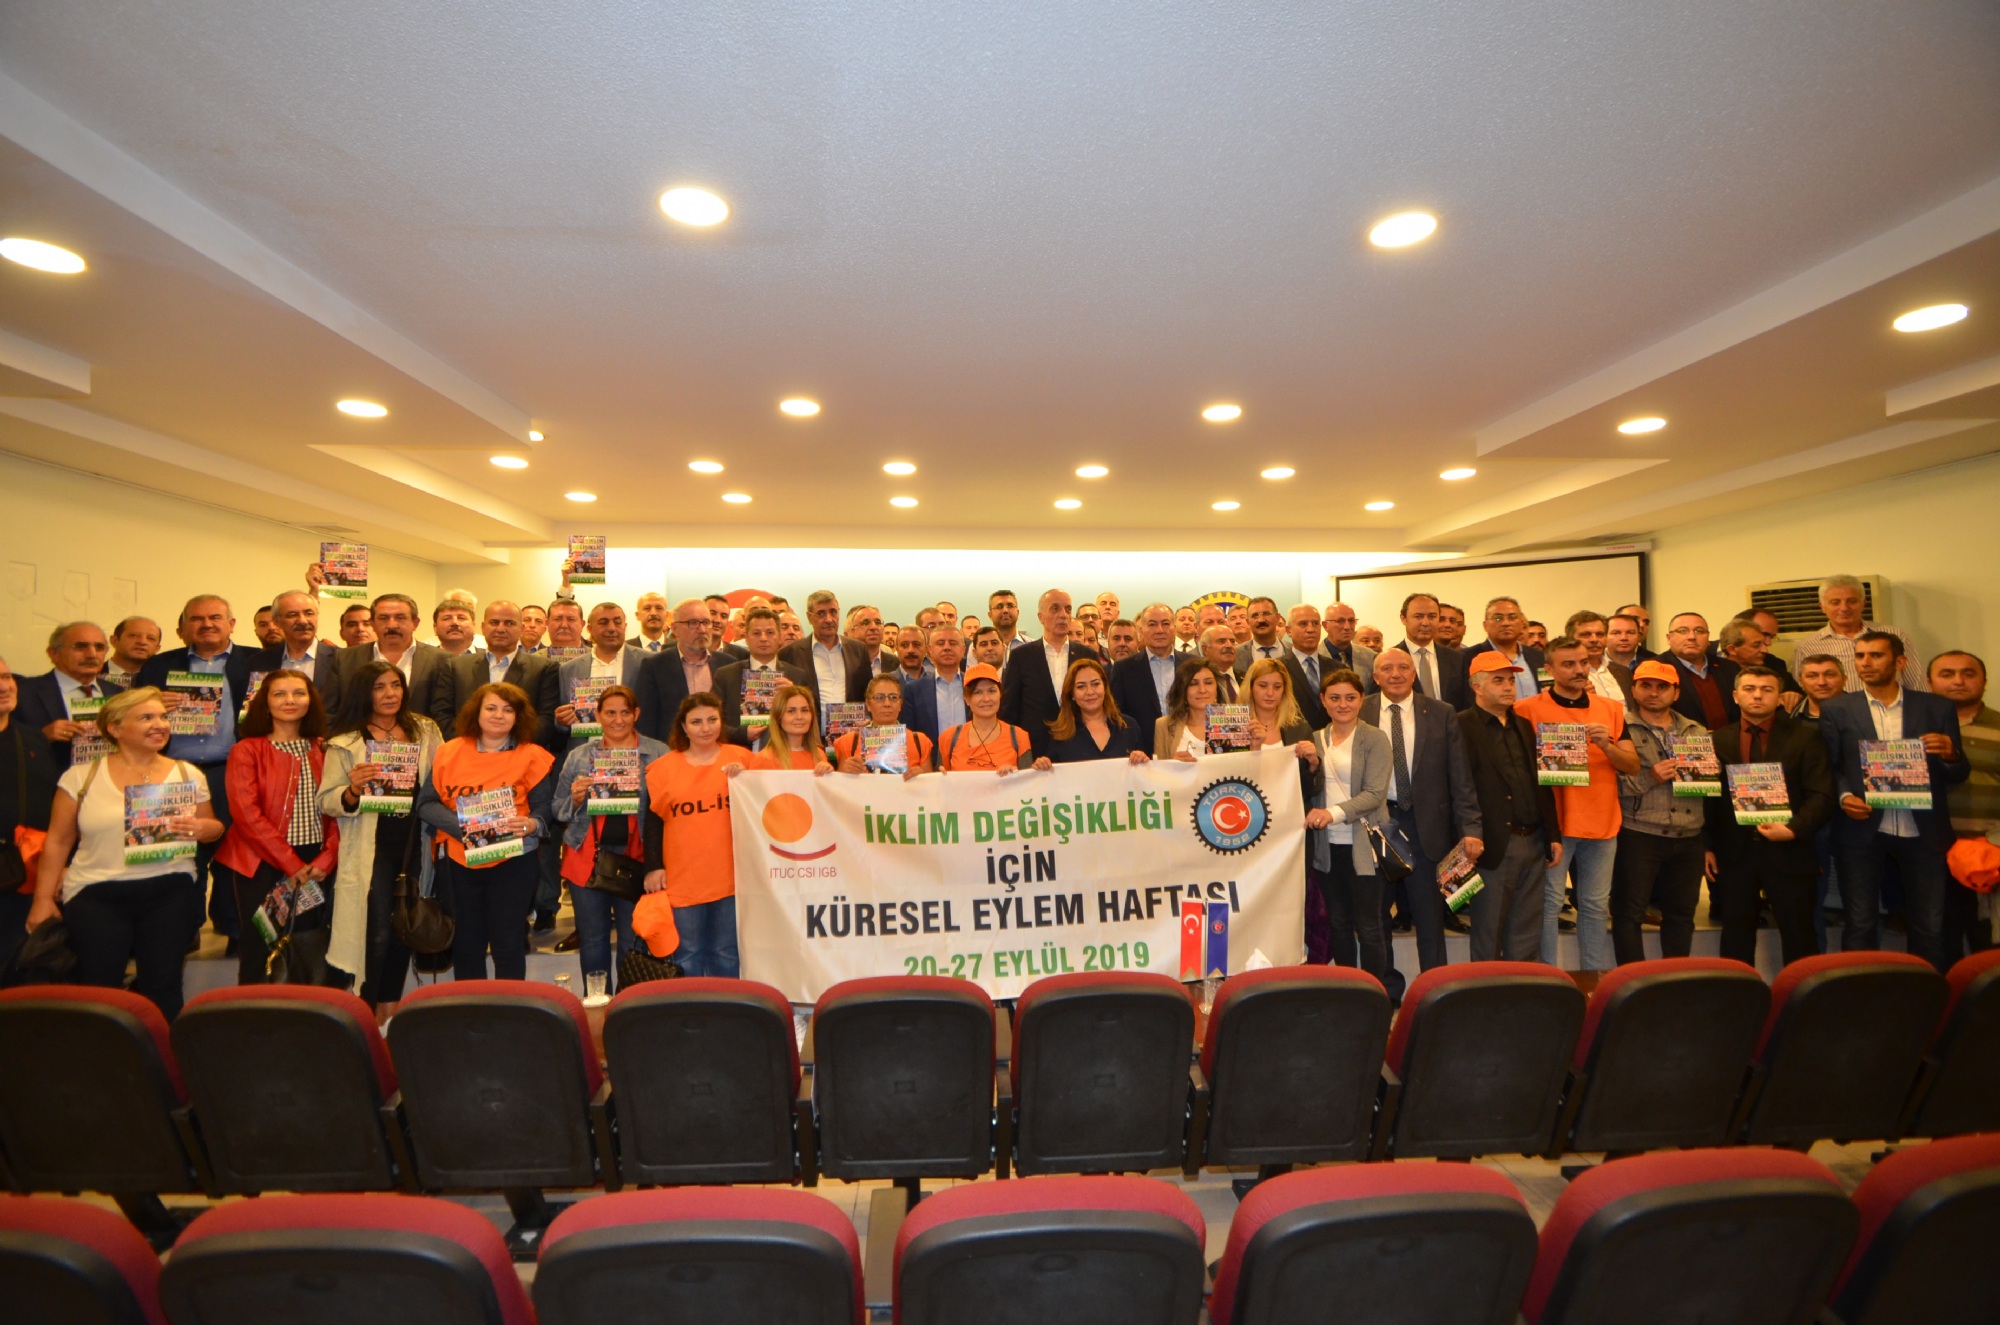 Sendikamız Yöneticileri 'İklim Değişikliği İçin Küresel Eylem Haftası' Toplantısına Katıldı